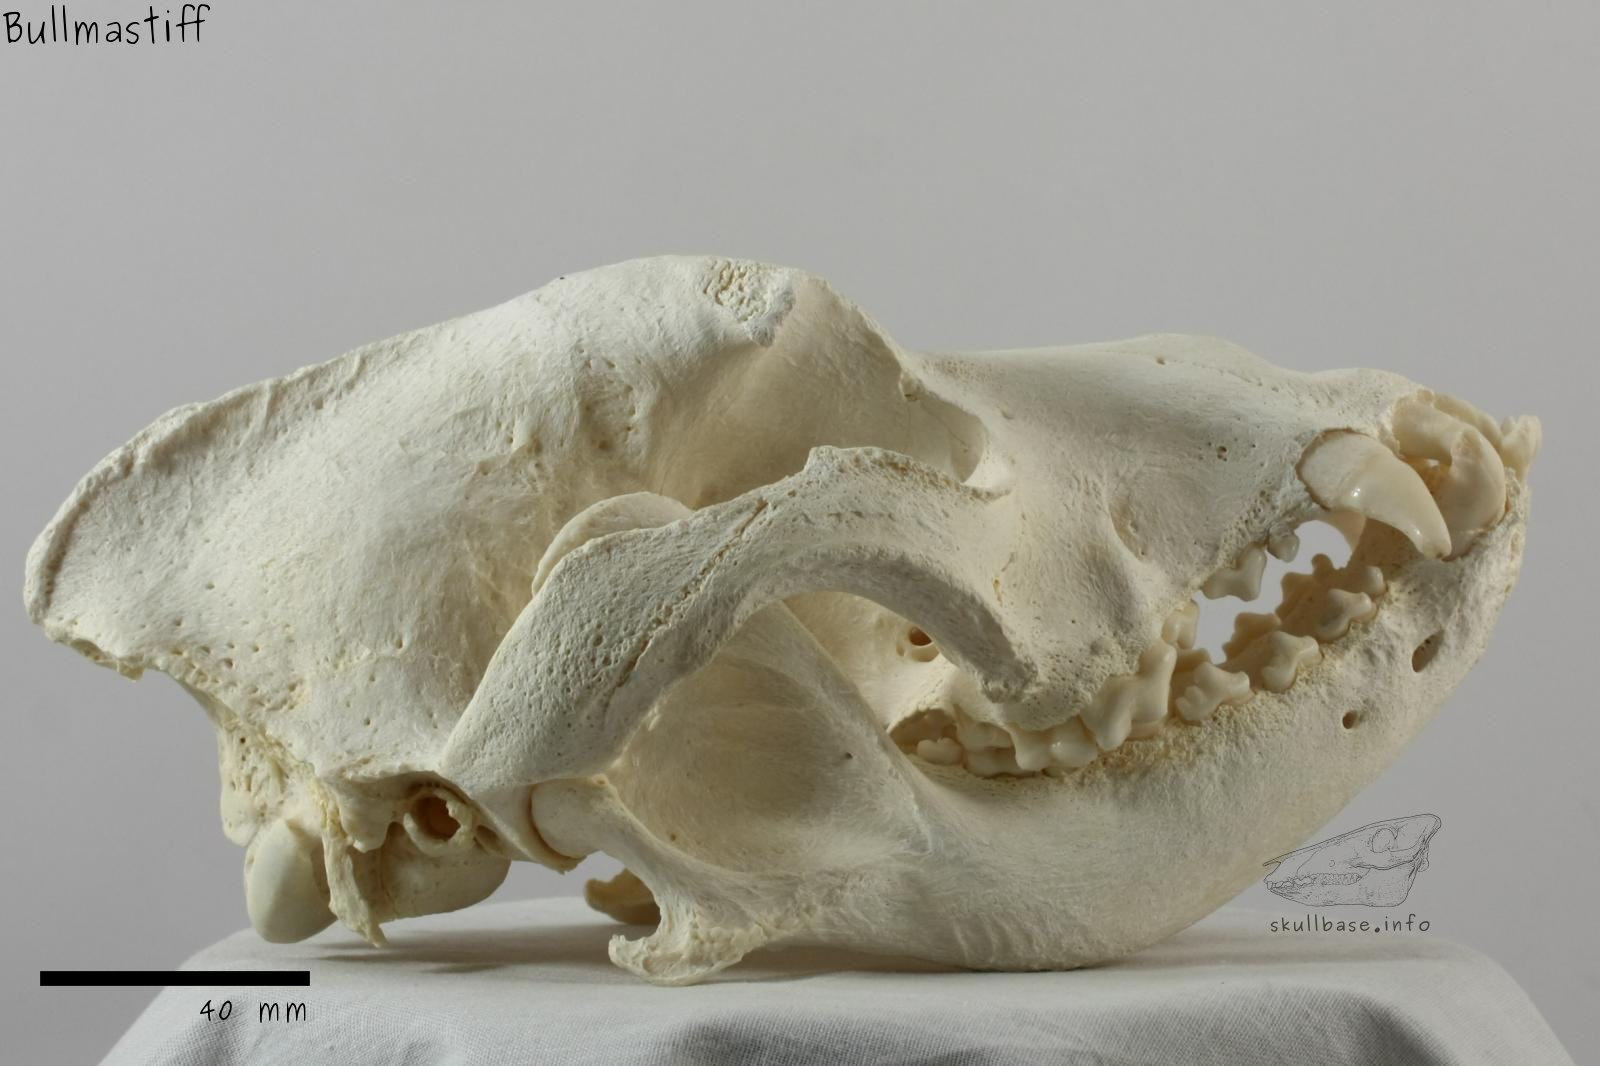 Bullmastiff (Canis lupus familiaris) skull lateral view